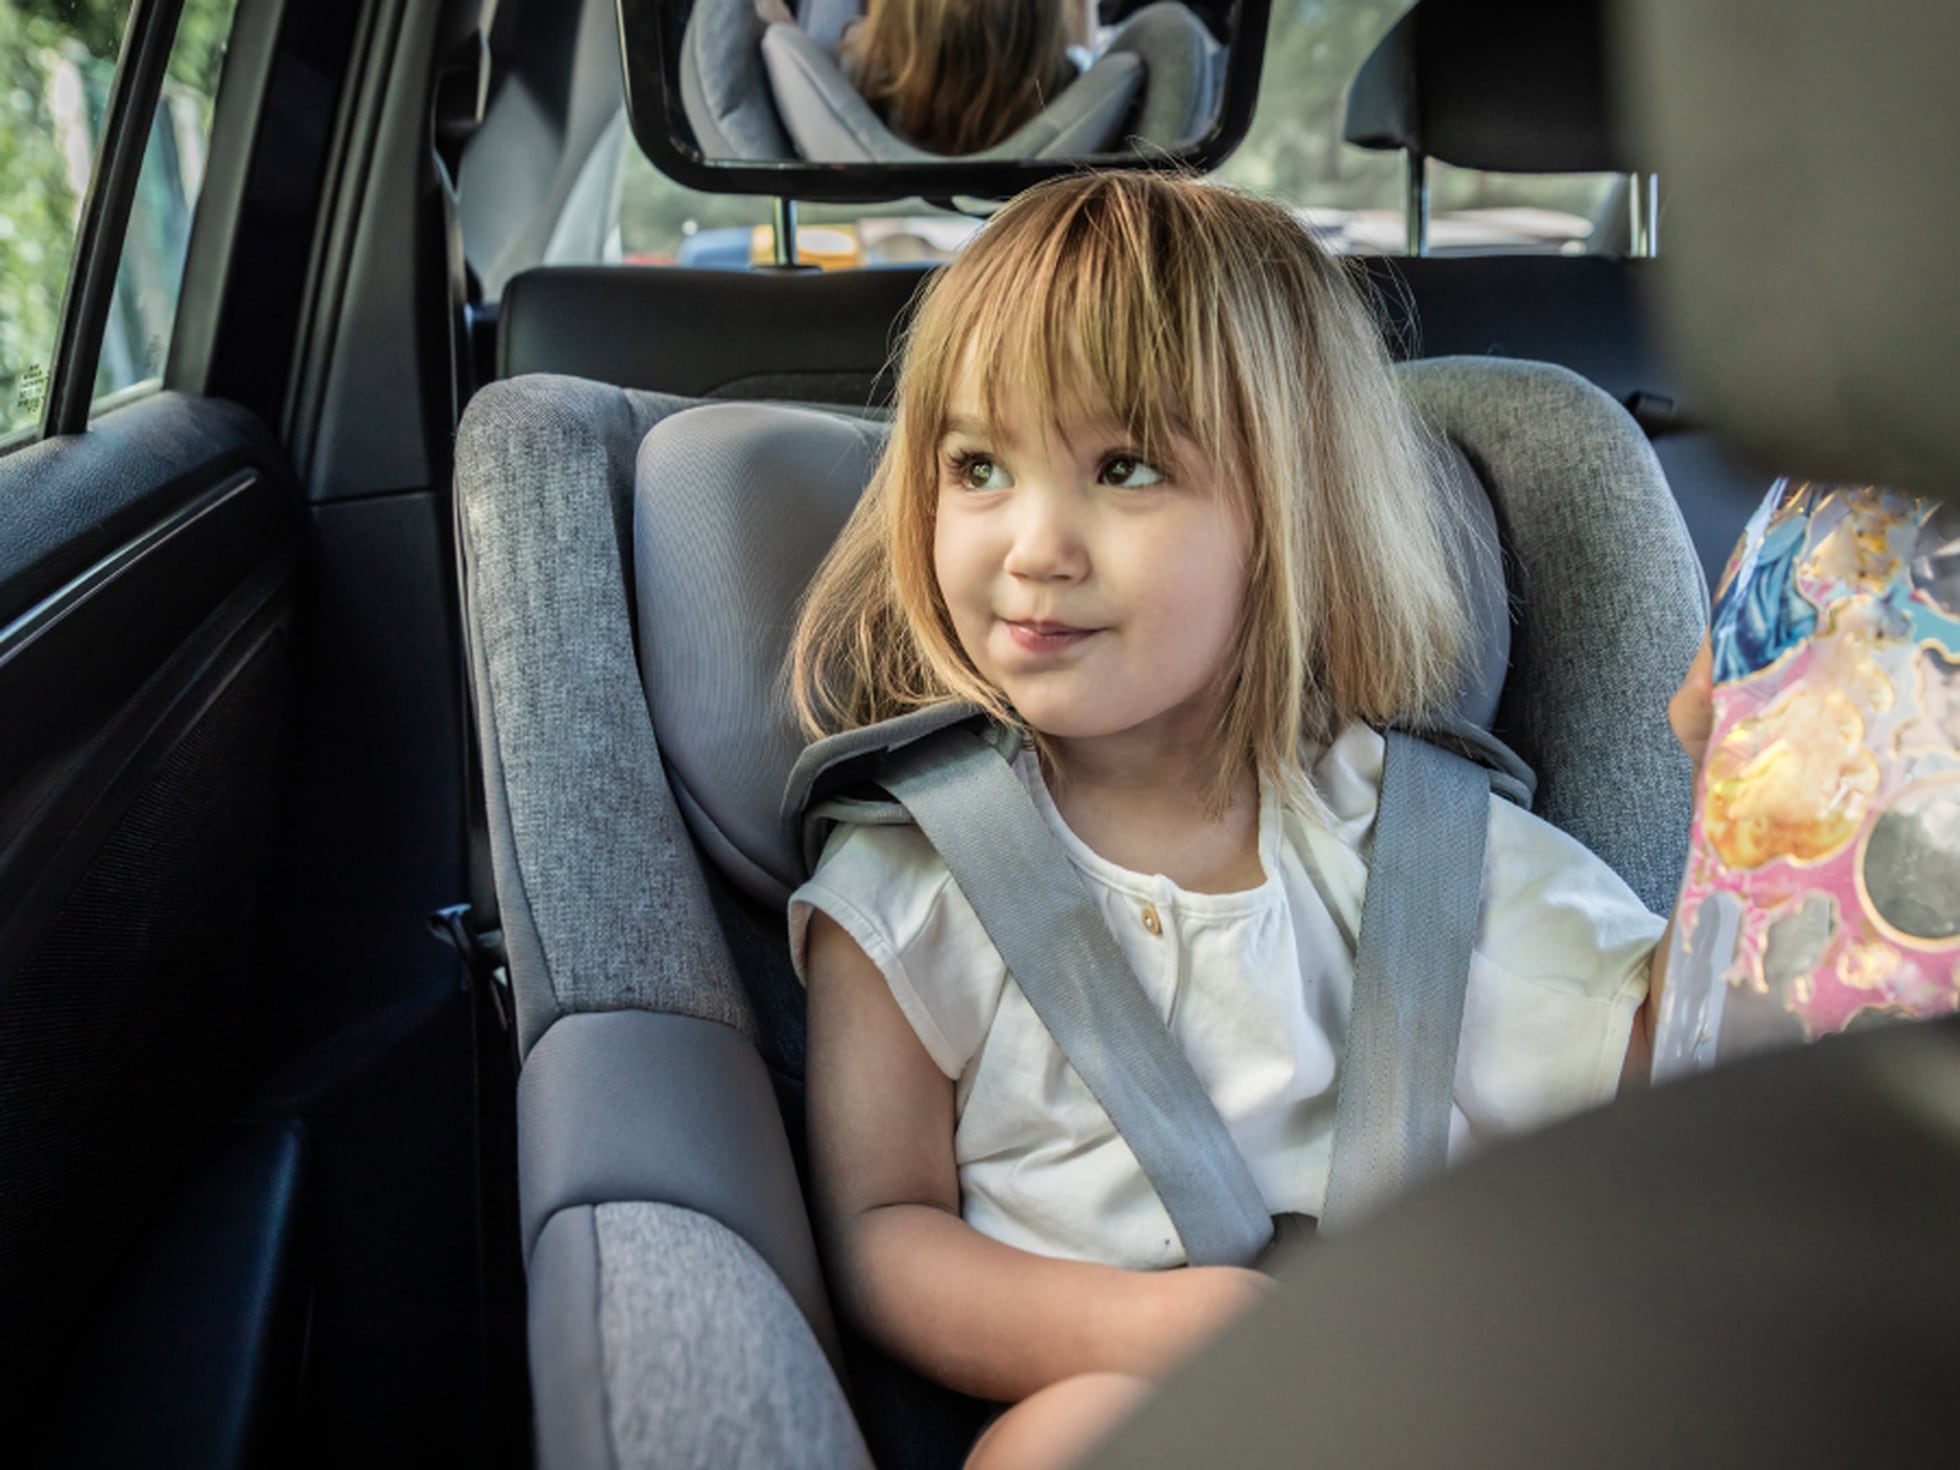 Sillas de seguridad para auto: información para familias 